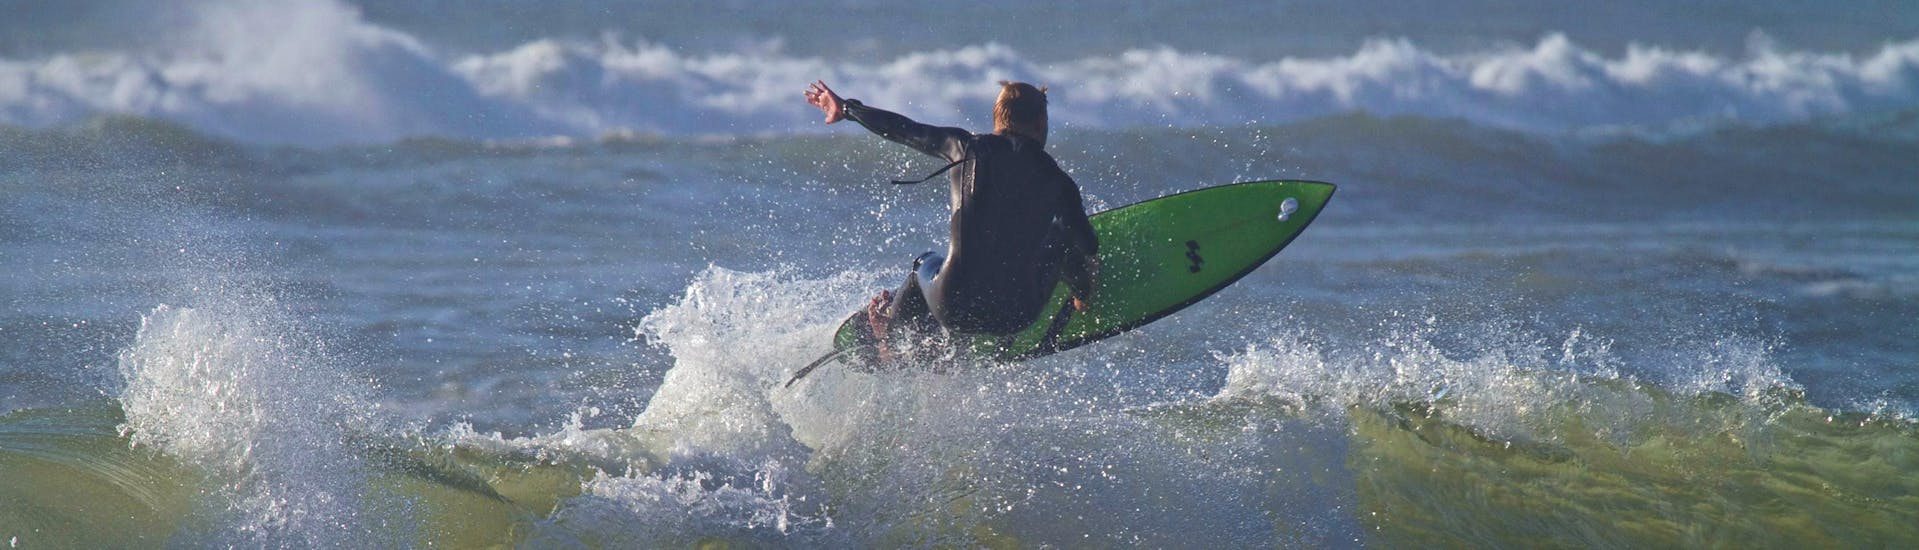 Een surfer berijdt een golf tijdens zijn privé surflessen bij Capbreton Surfer School.